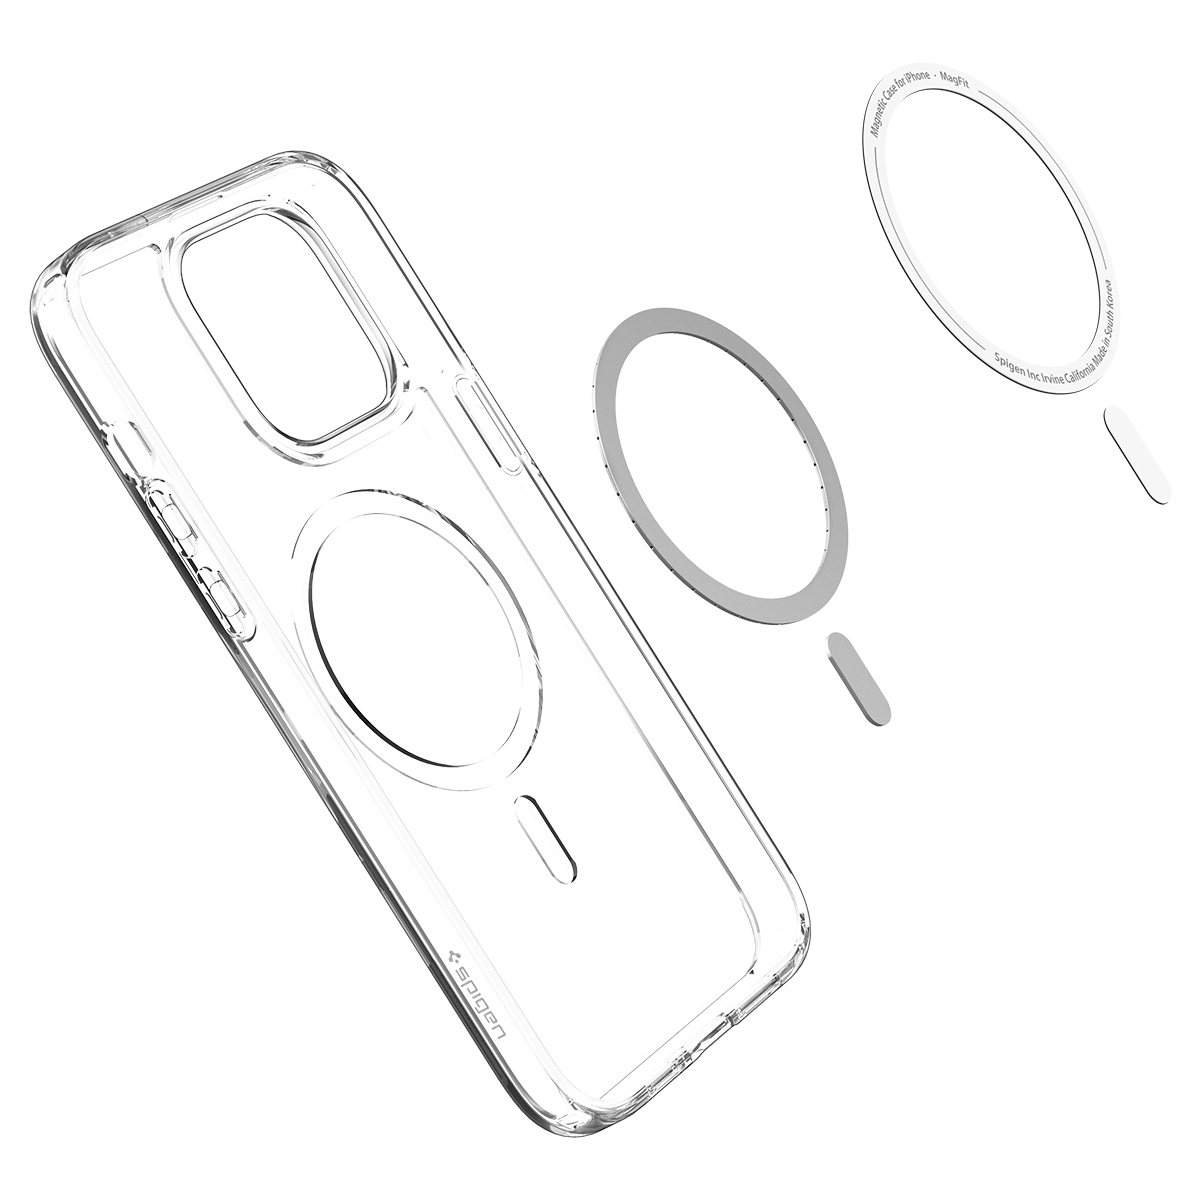 Ốp Lưng dành cho iPhone 14 Pro Max Spigen Crystal Hybrid MagFit Clear Case Chống Ố Vàng - Hàng Chính Hãng